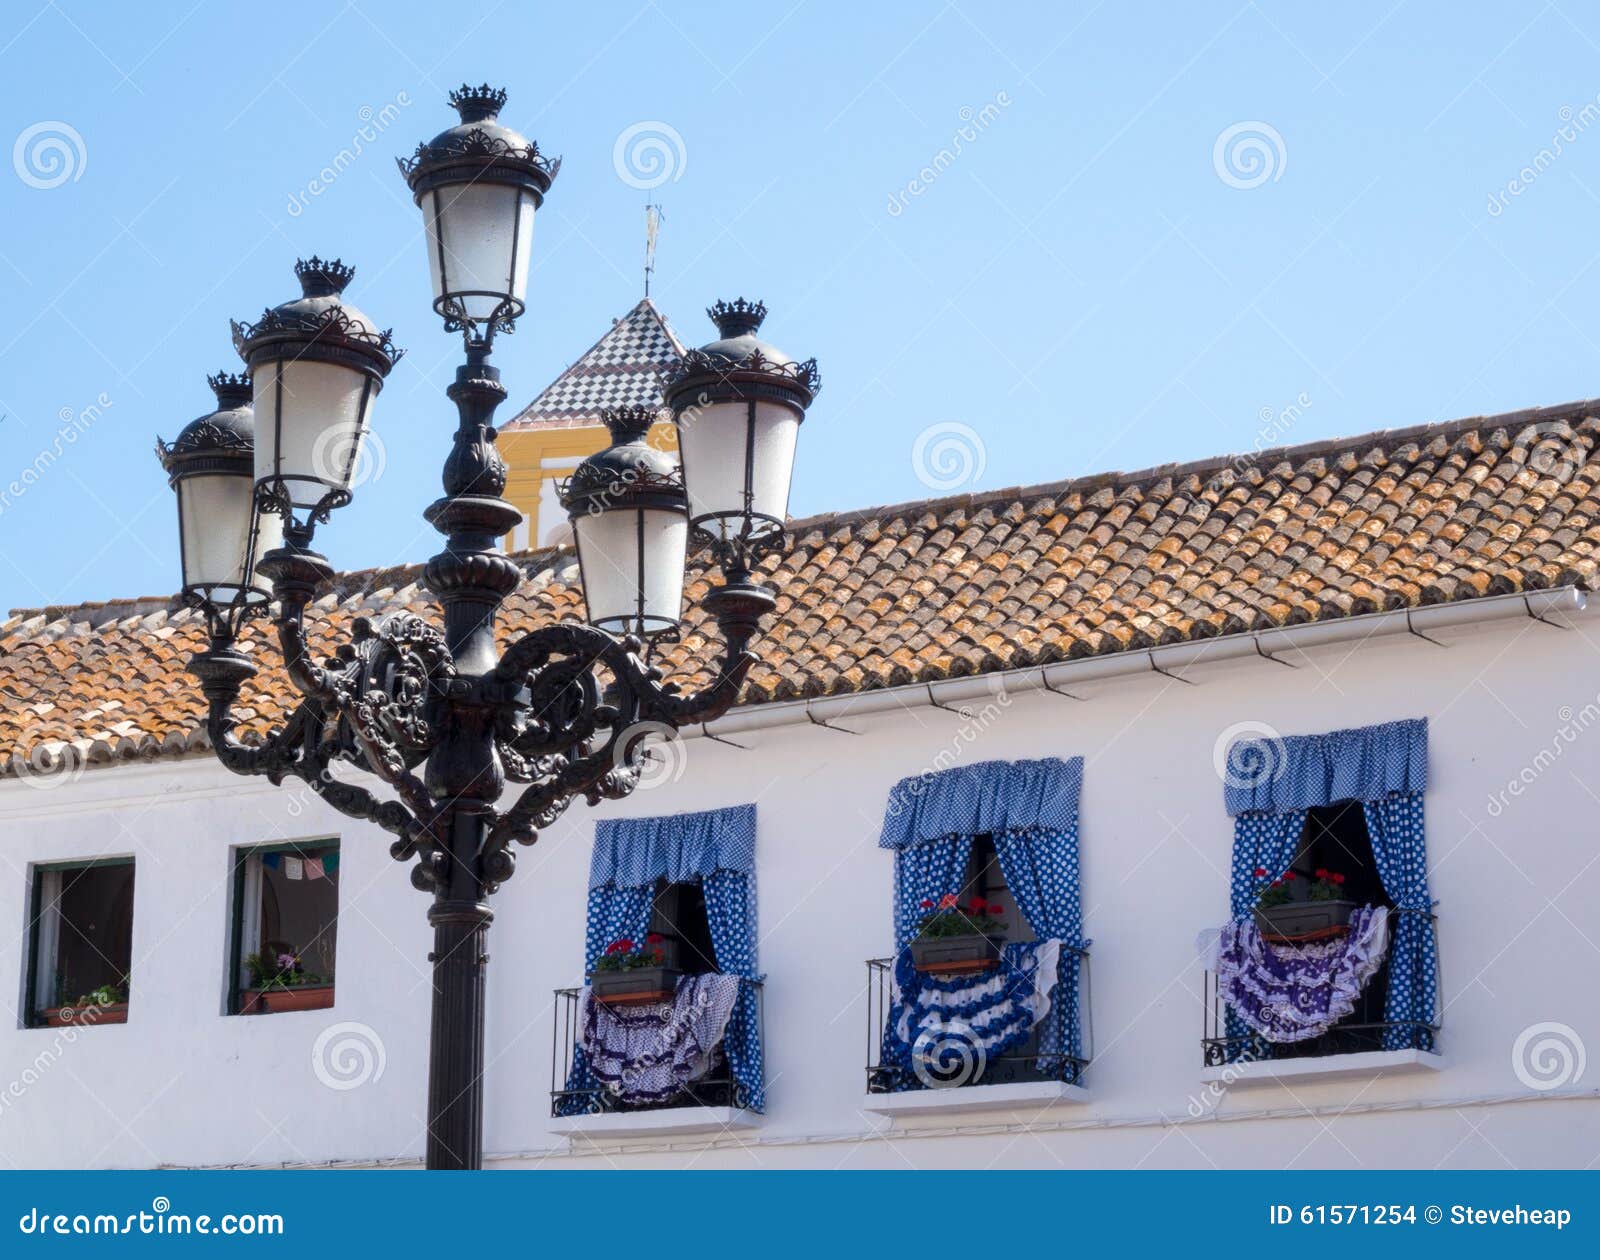 decorated windows face plaza de los naranjos in marbella